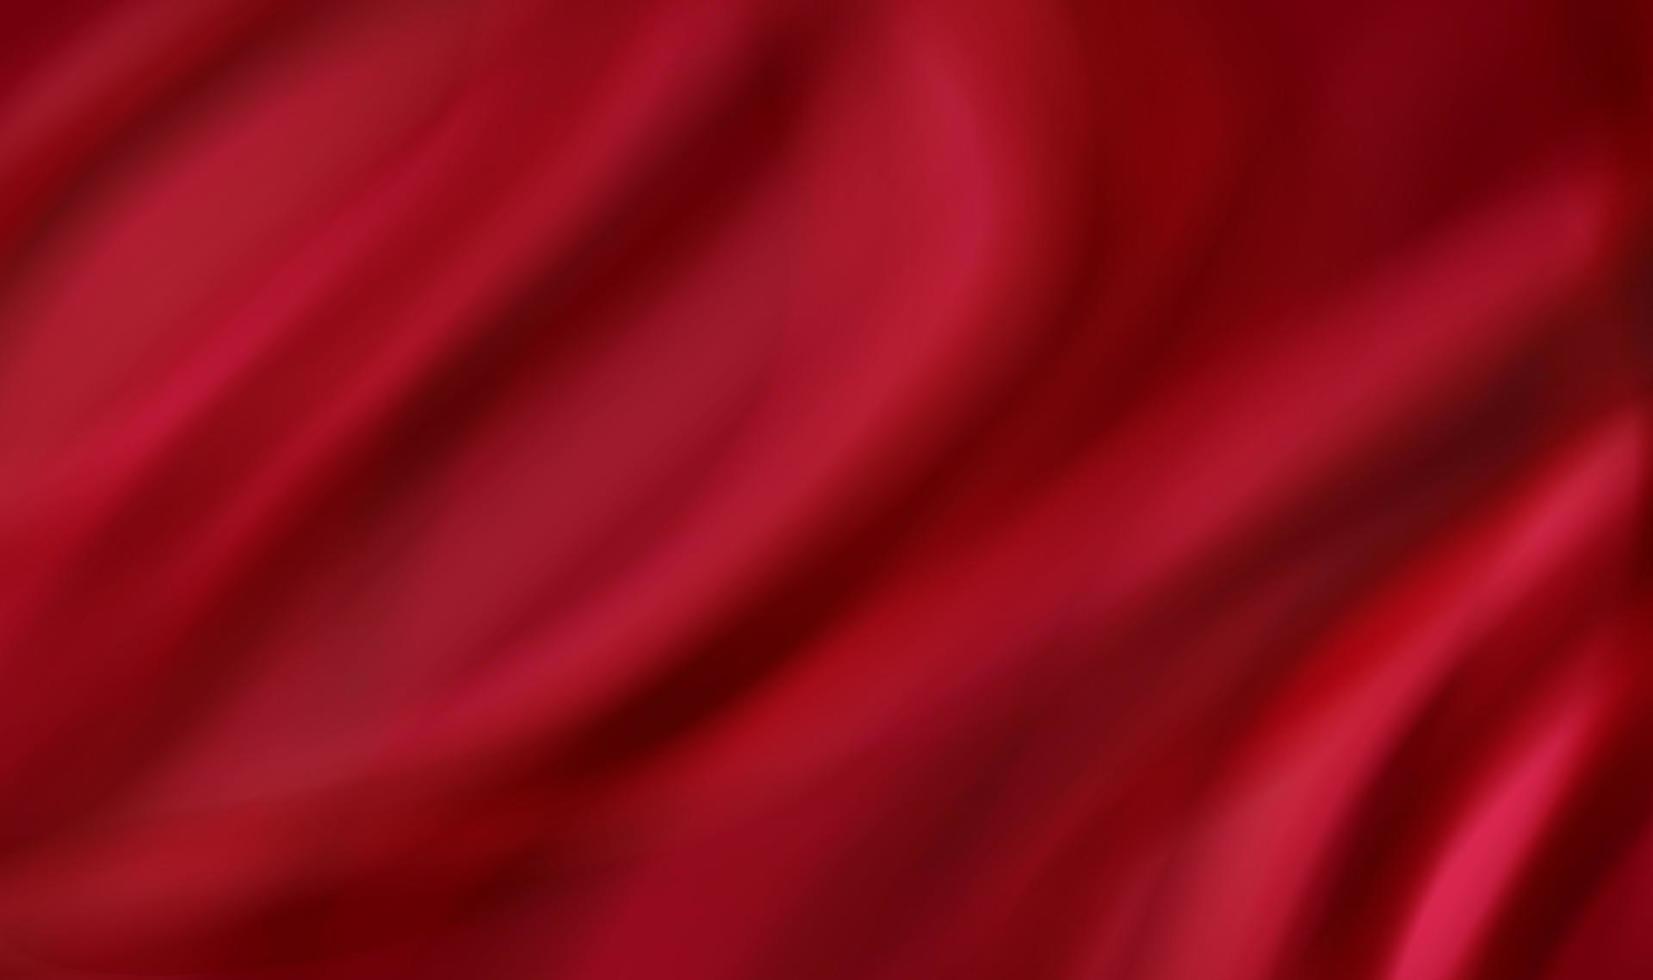 abstracte rode zijde stof realistische textiel 3d illustratie achtergrond vector